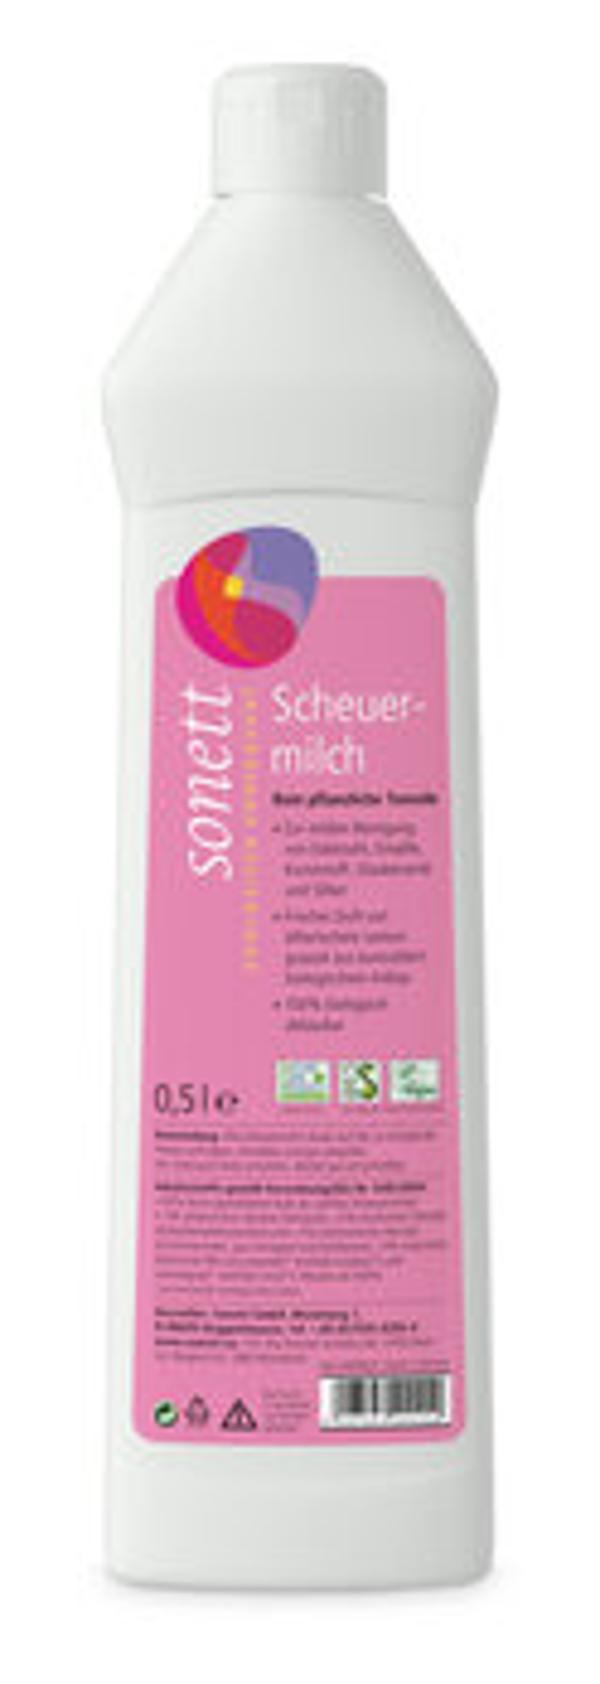 Produktfoto zu Scheuermilch, 500 ml